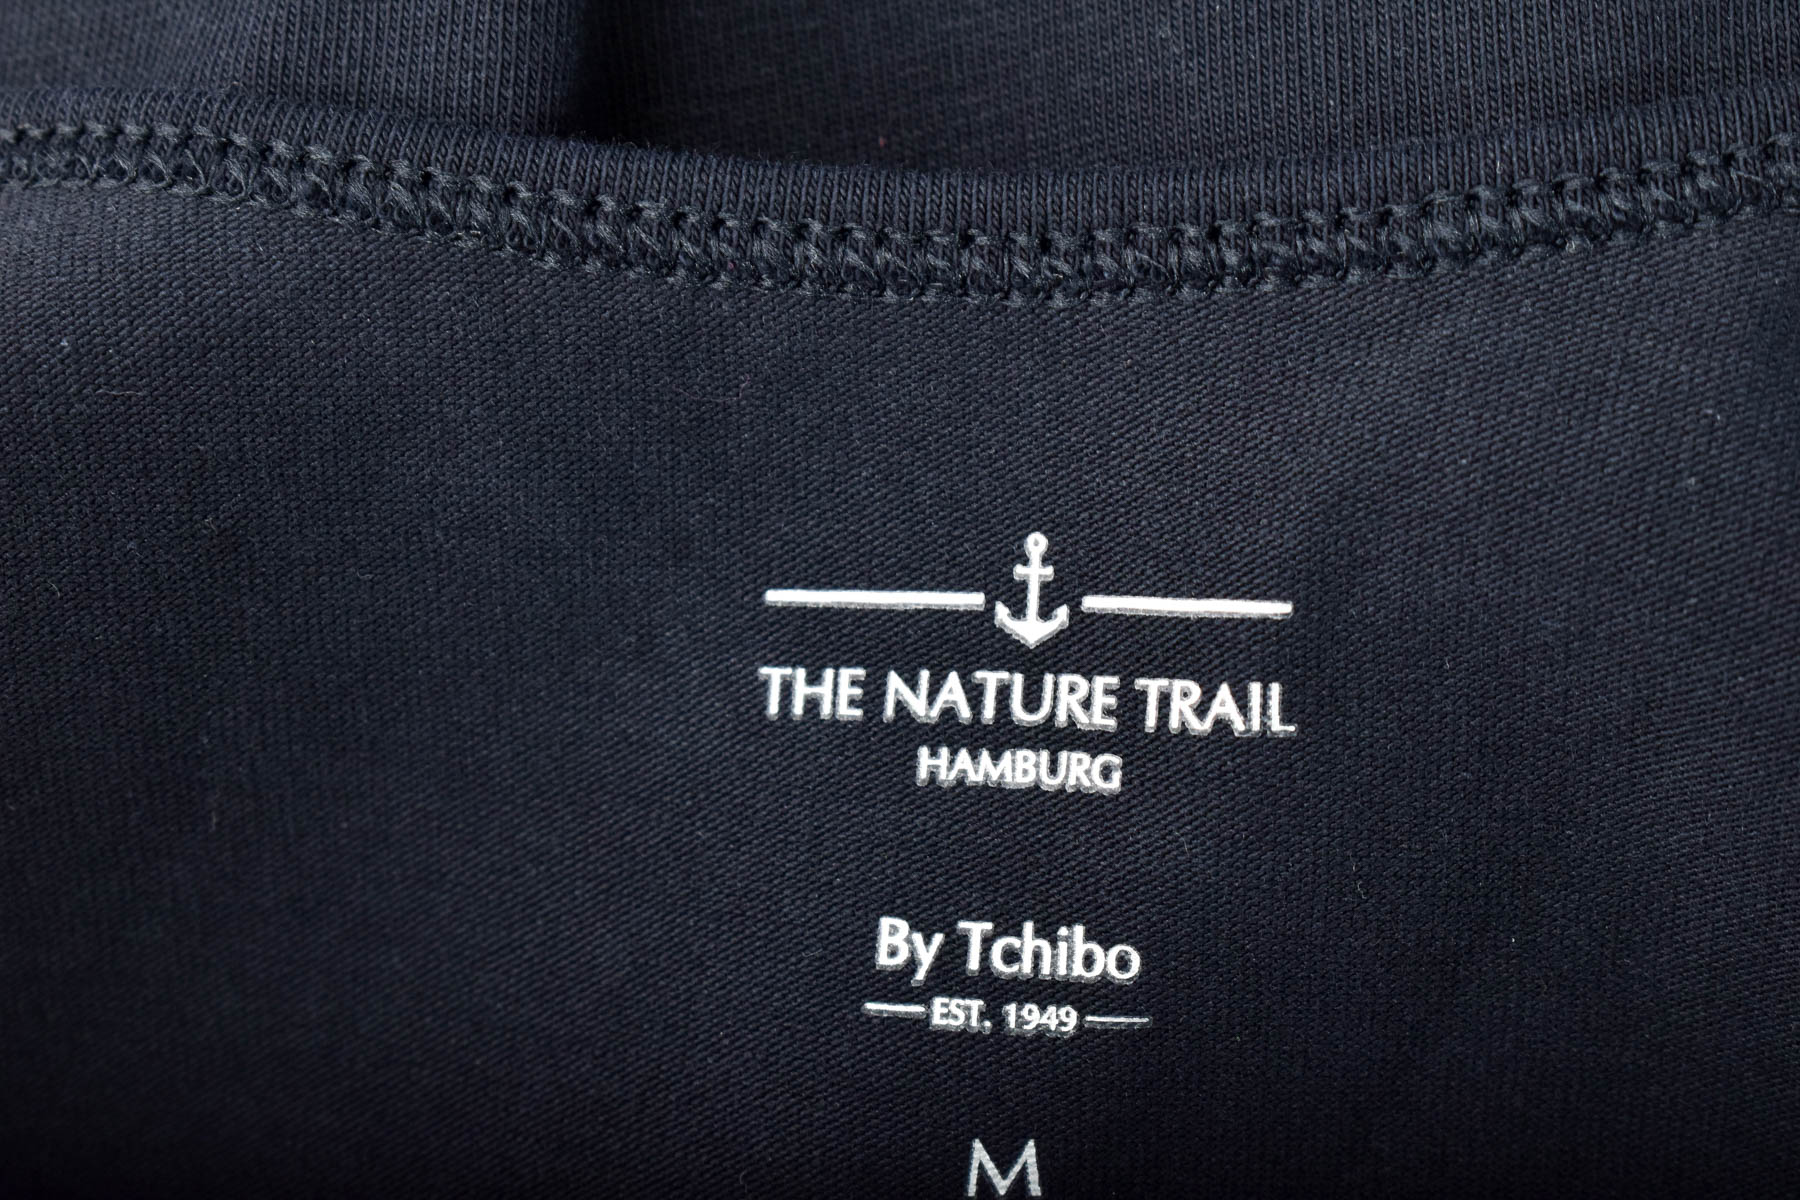 Γυνεκείο τοπ - THE NATURE TRAIL By Tchibo - 2